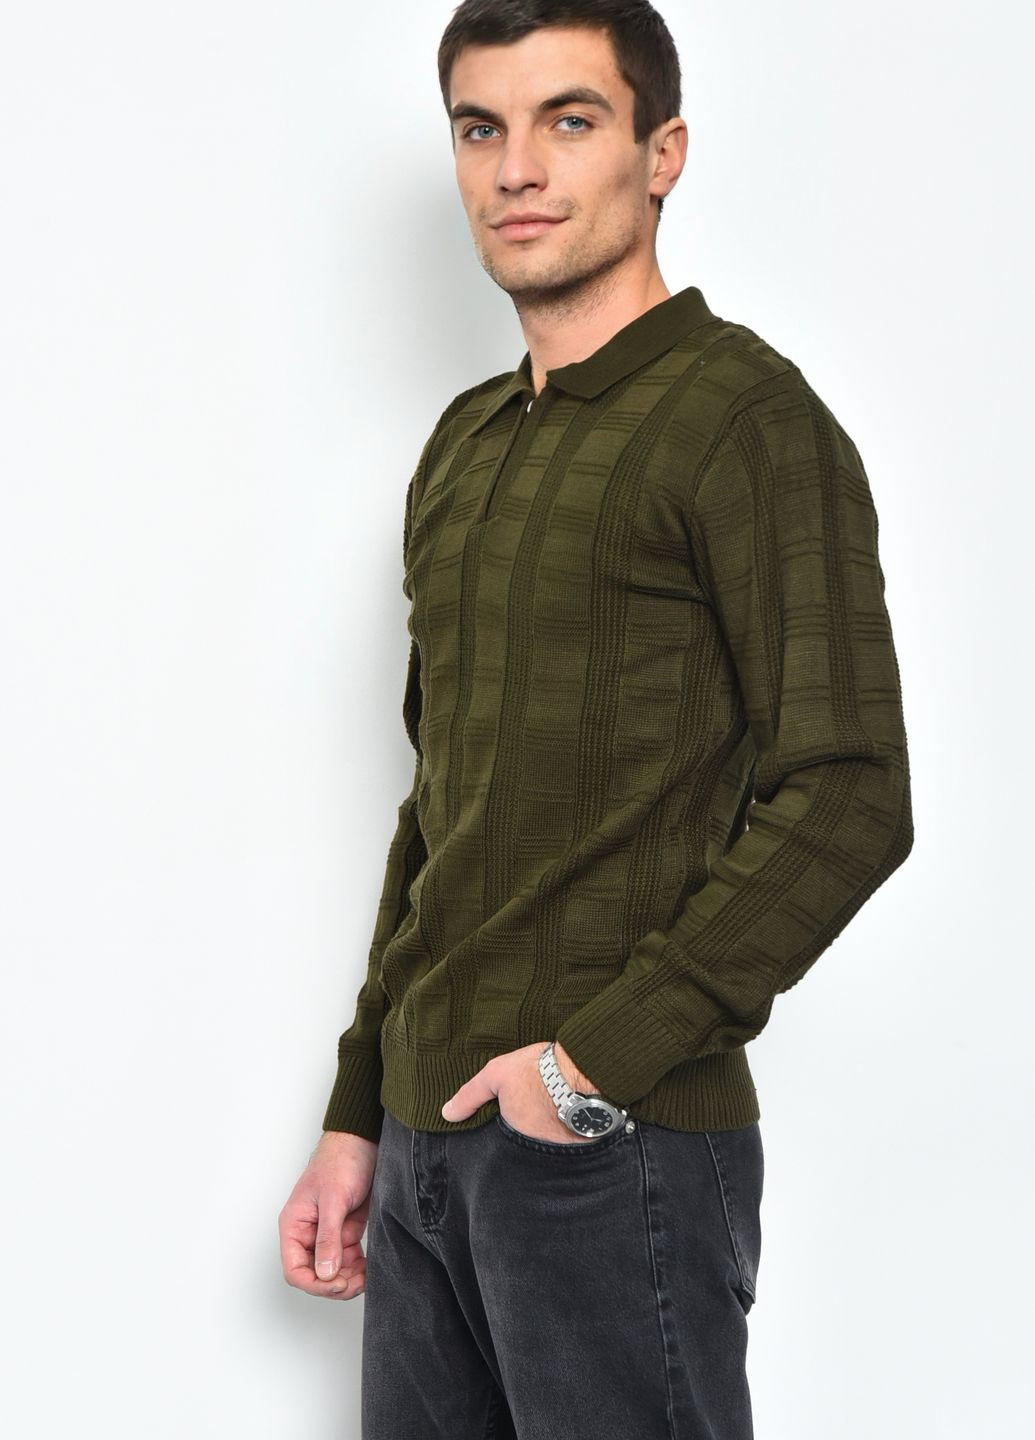 Оливковый (хаки) демисезонный свитер мужской цвета хаки акриловый пуловер Let's Shop